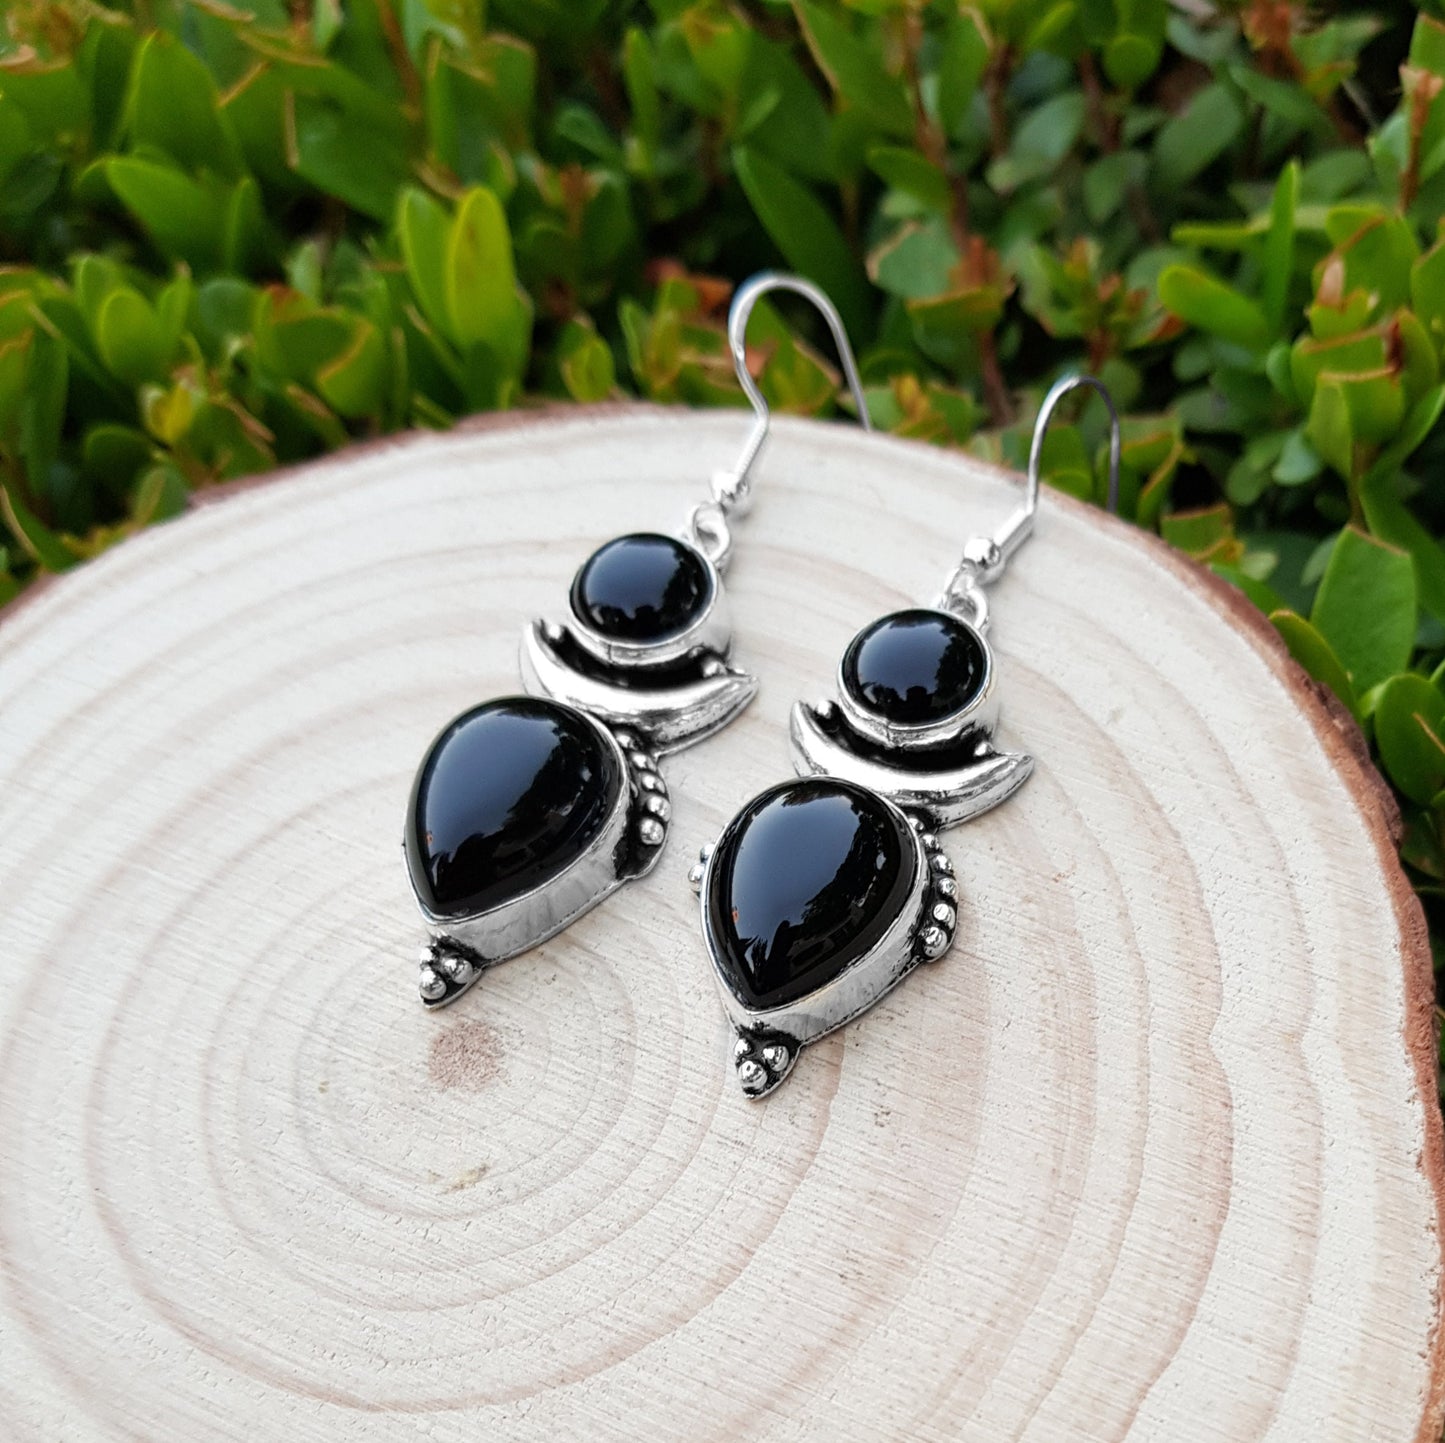 Black Onyx Crescent Moon Earrings In Sterling Silver Dangle Statement Earrings Boho Ethnic Earrings Gem Stone Earrings GypsyJewelry